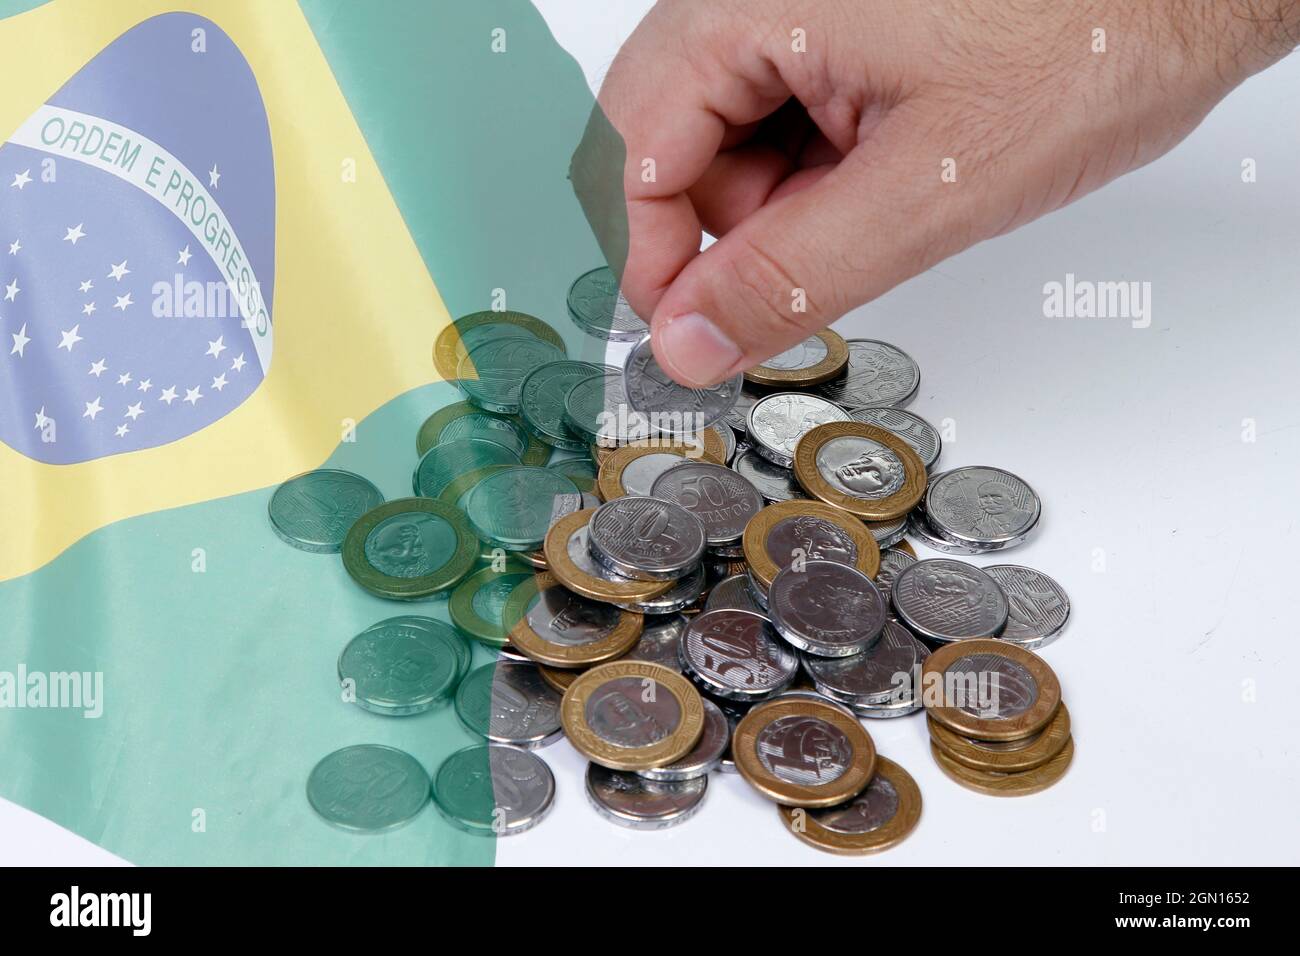 gestione del gruppo di monete in denaro reale del brasile - economia e finanza - bandiera del brasile Foto Stock